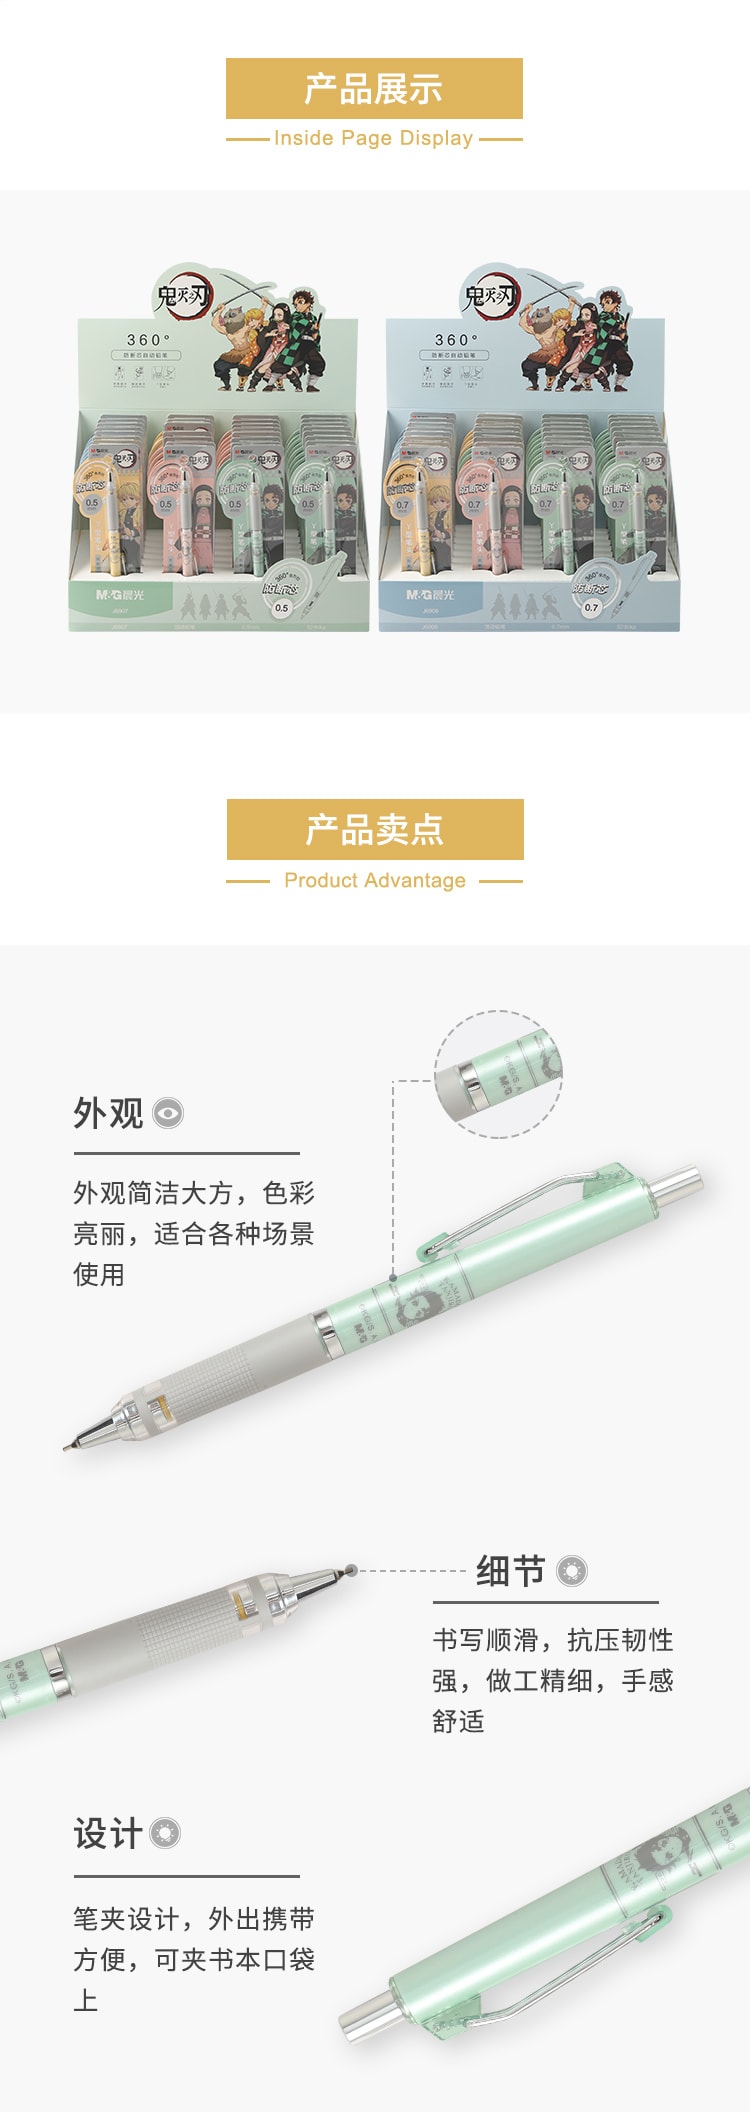 [中国直邮]晨光文具(M&G) 鬼灭之刃联名限定款系列防断自动铅笔QMPJ6907 HB 0.5mm 360°防断笔芯 款式随机 正版IP授权 1支装